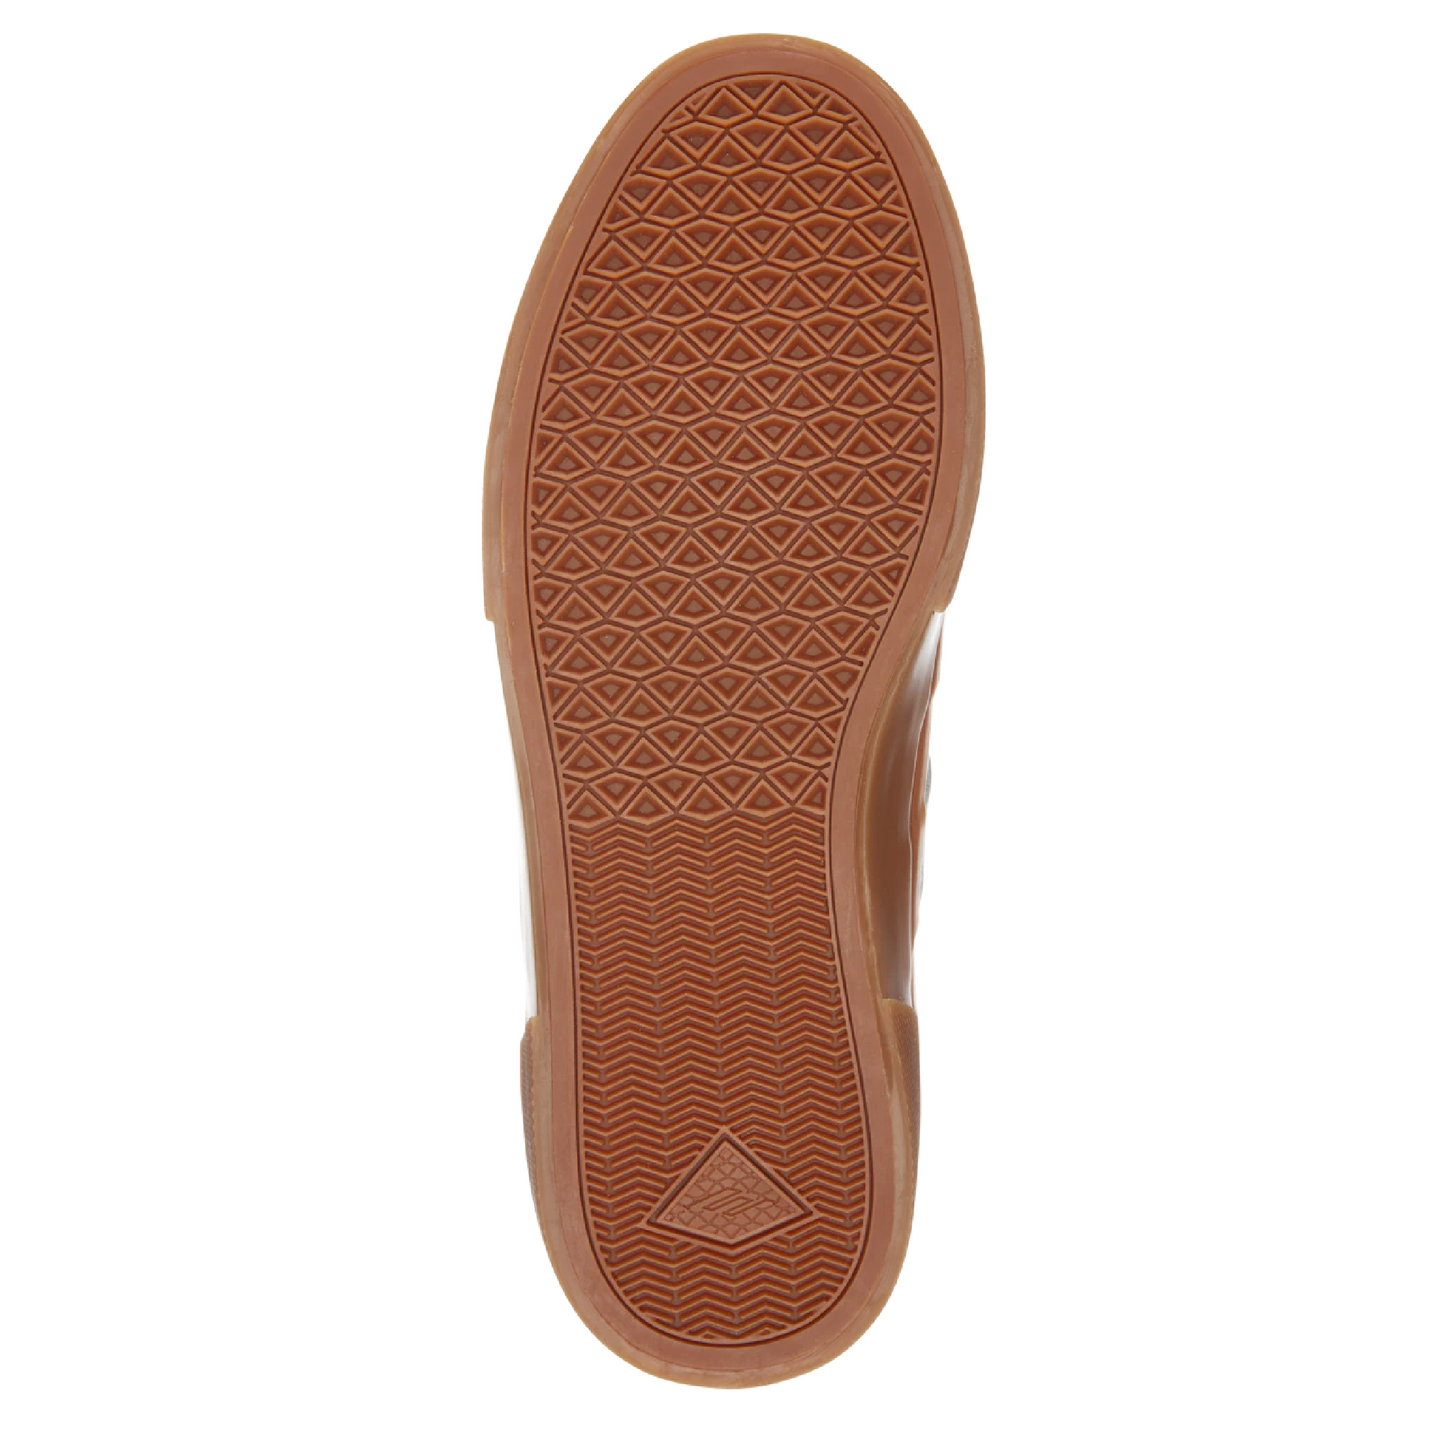 Emerica - Tilt G6 Vulc Skate Shoe (White/Blue/Gum)